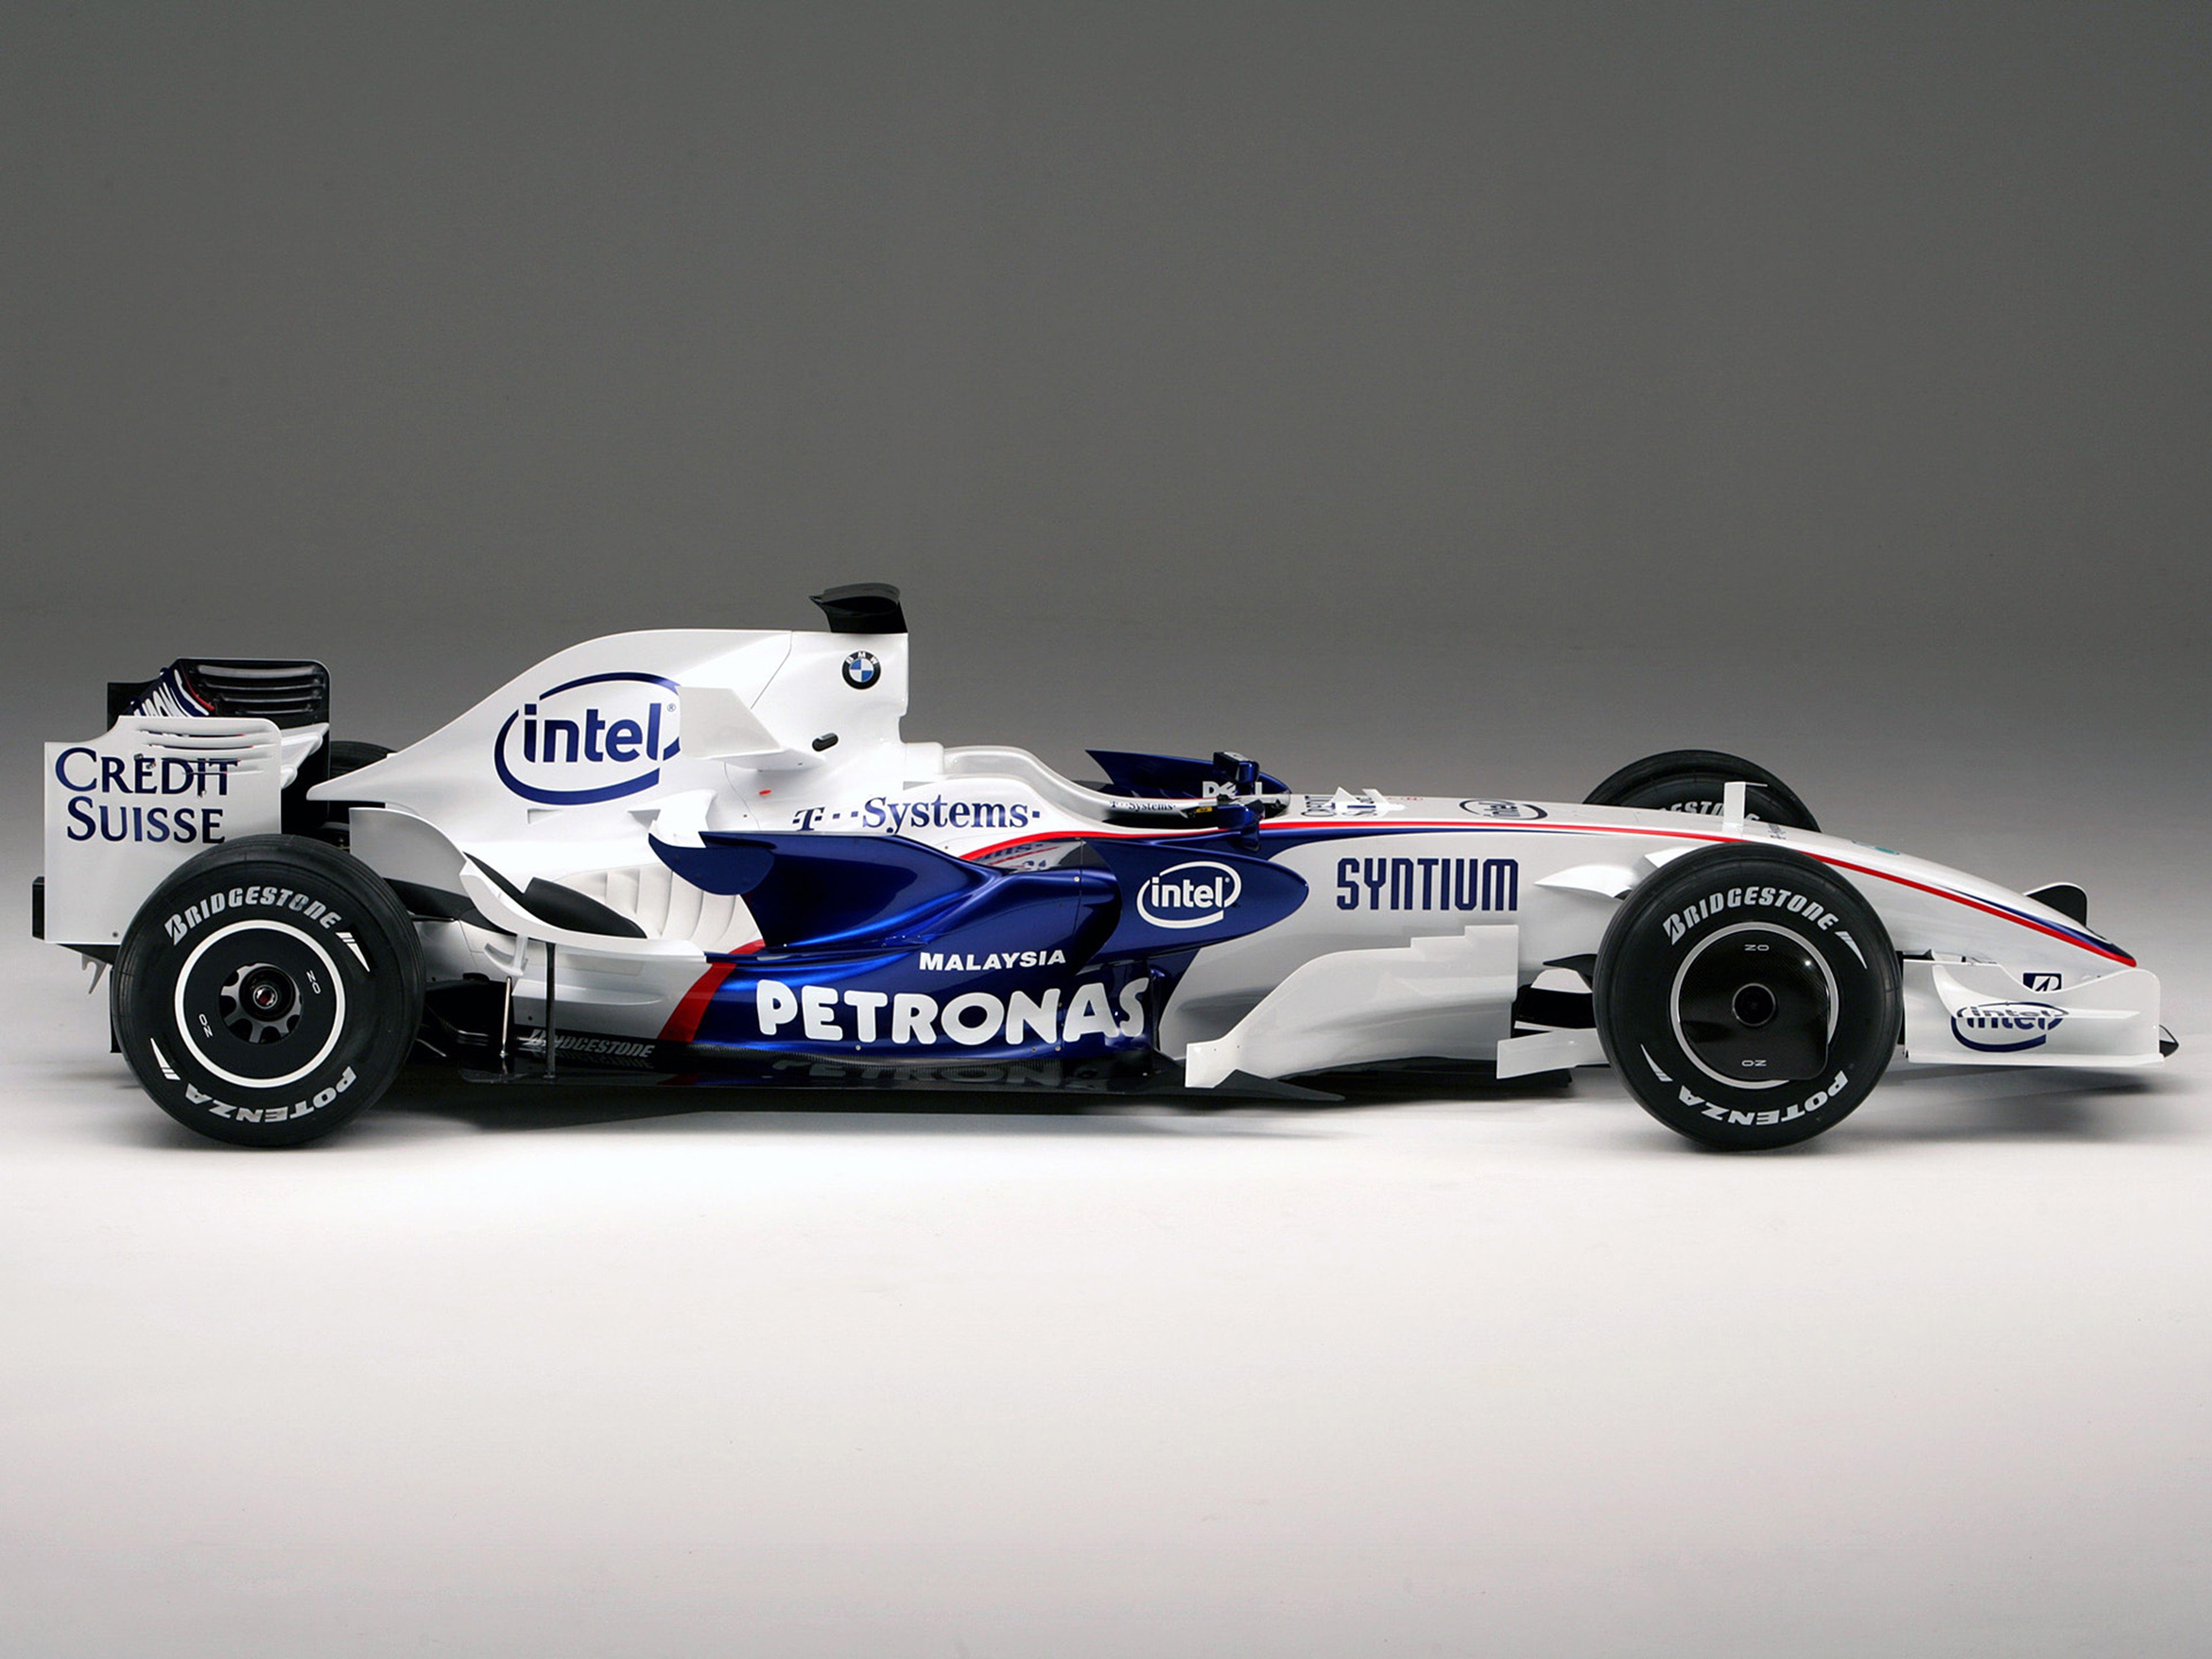 F1 Sauber C14-03 - Carros de corrida a venda